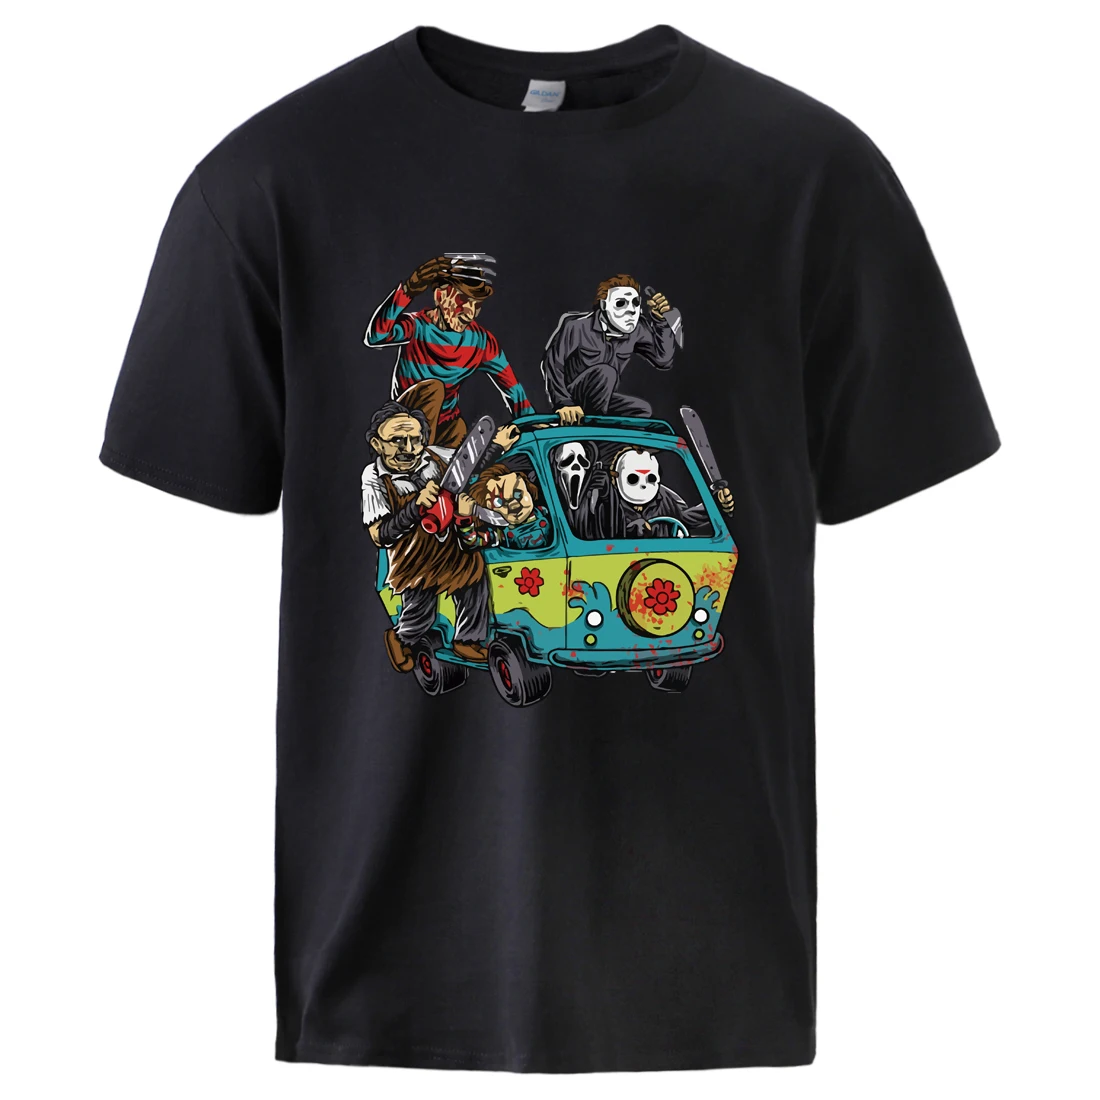 Maniac Park Horror Movie Man Summer Tshirts 2021 Male 100% Cotton T shirt Top parco a tema Jason Clown Saw Halloween Graphic